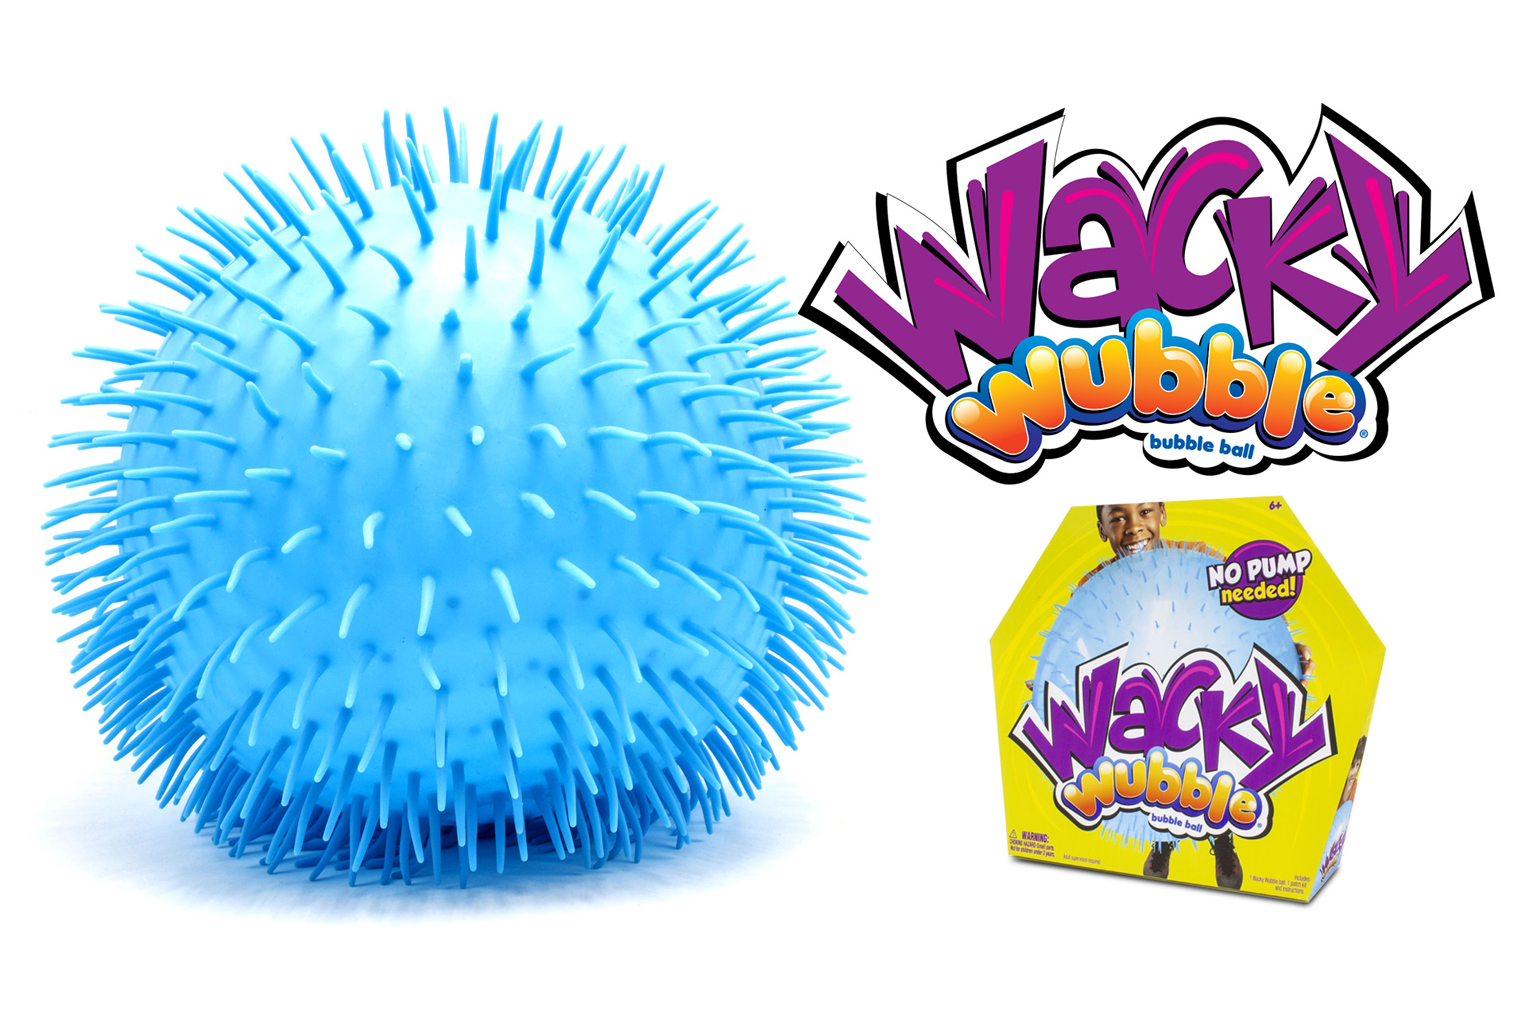 Blue wack wubble bubble ball